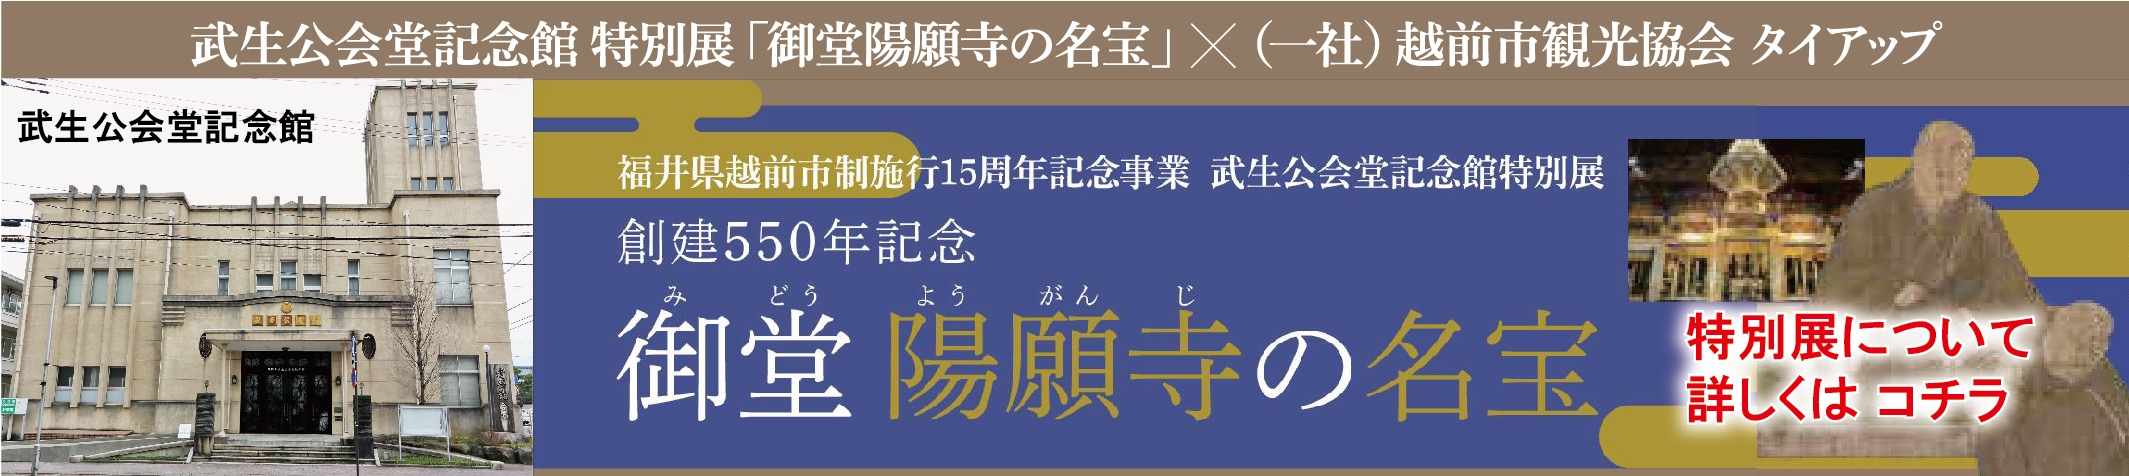 武生公会堂記念館特別展「御堂陽願寺の名宝」タイアップ